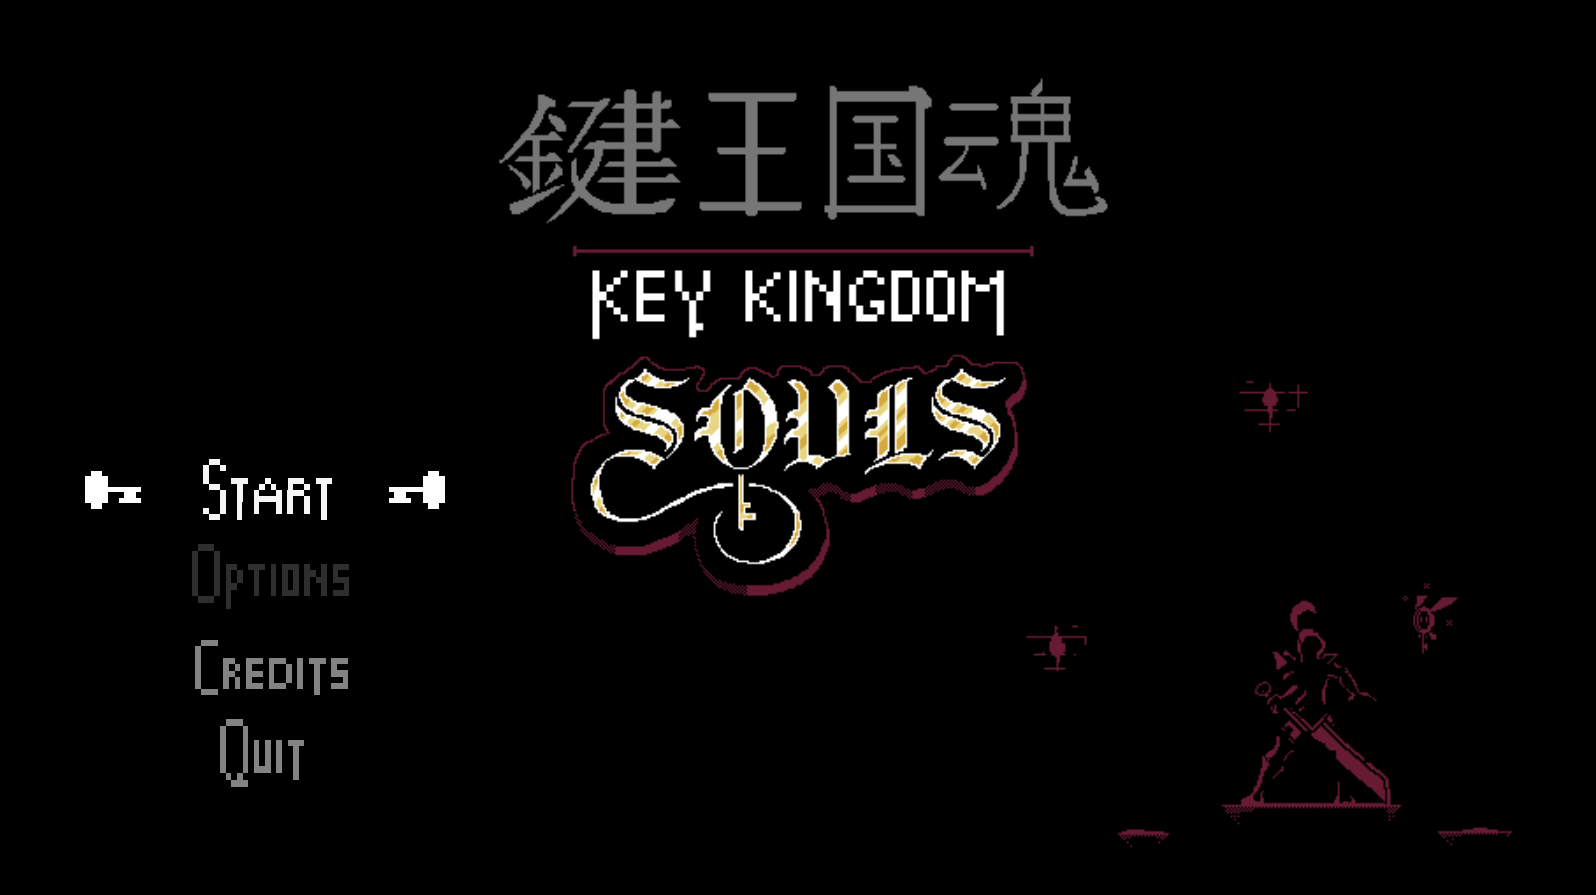 Key kingdom souls mac os 11